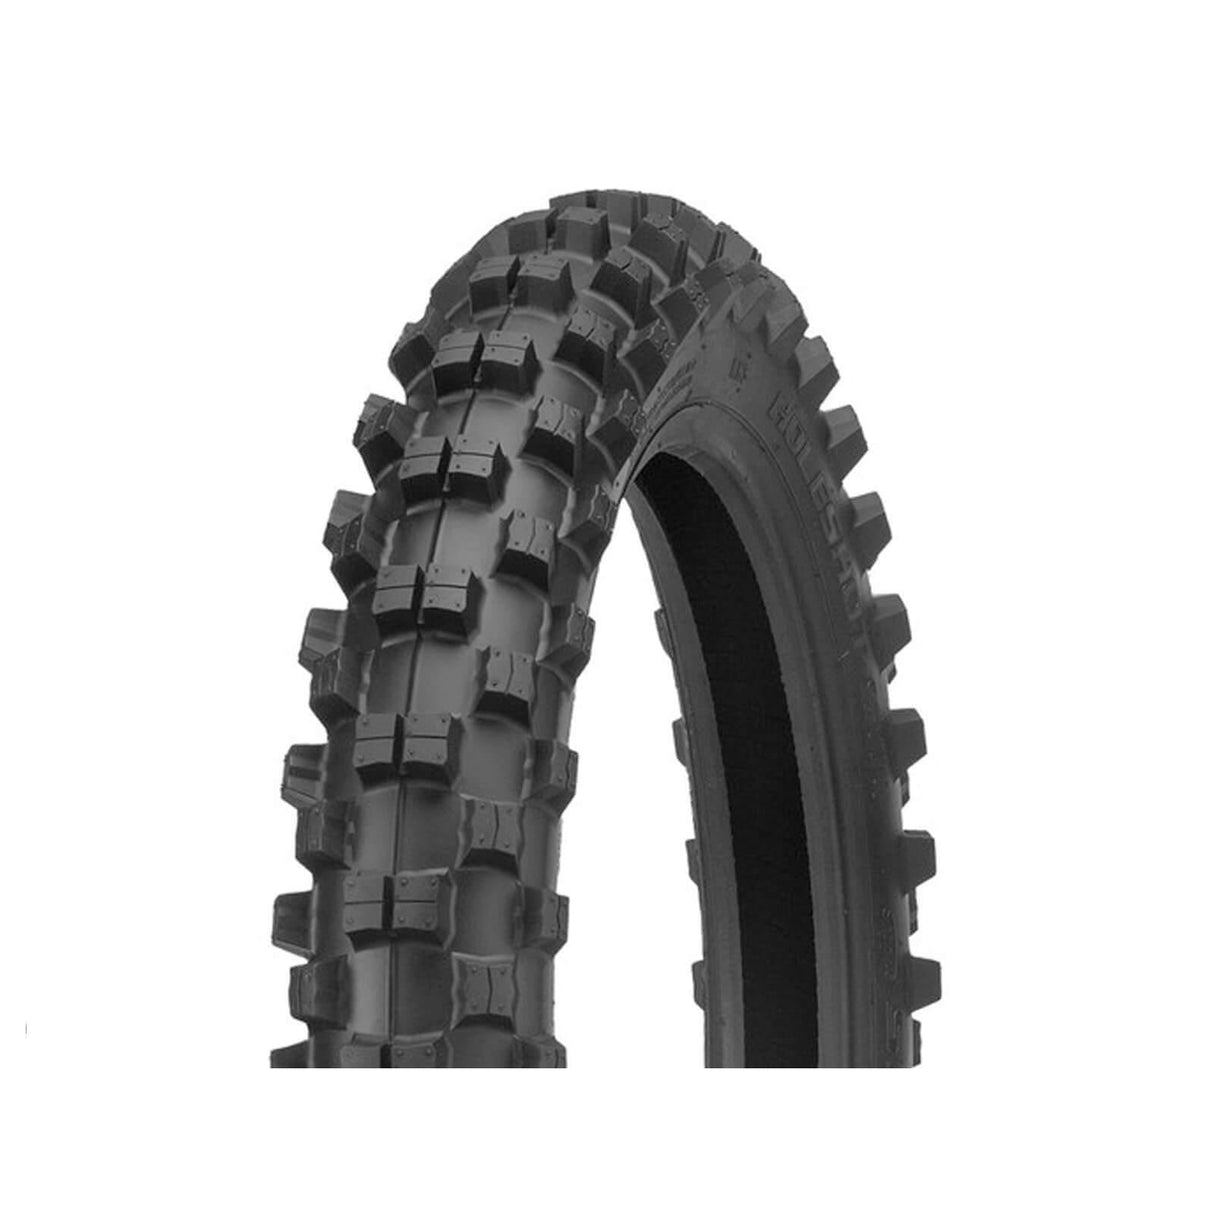 110/100-18 R546 Shinko Rear Tyre